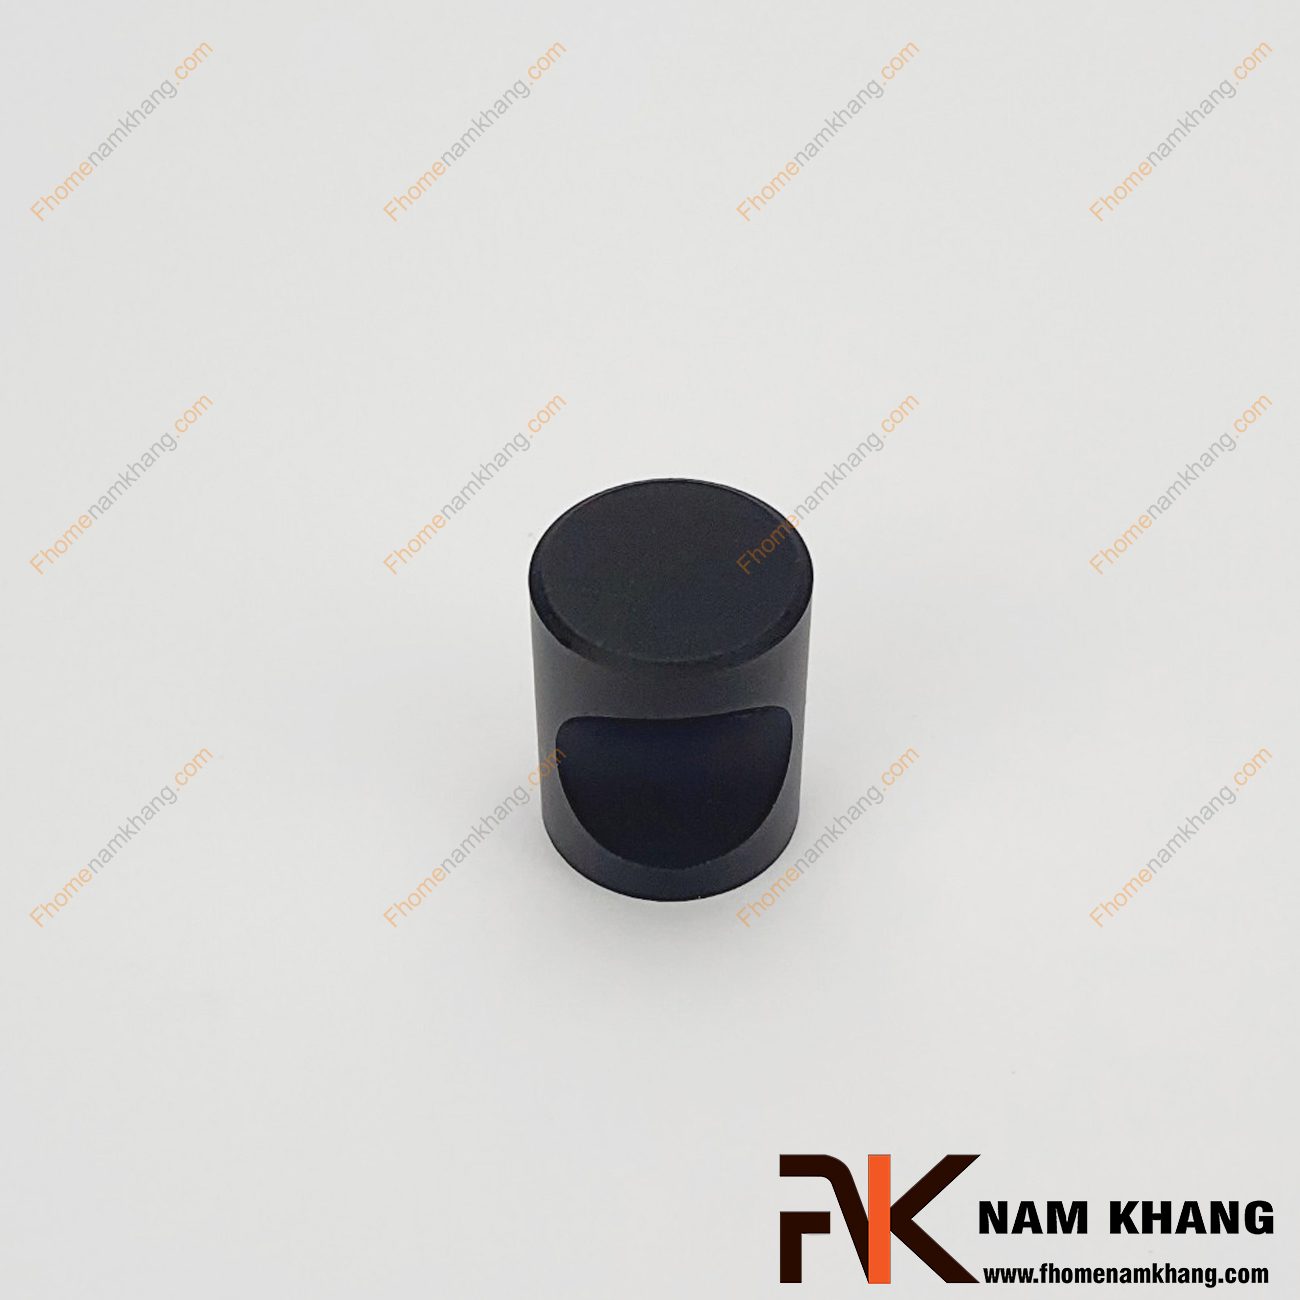 Núm cửa tủ màu đen NK057-D, sản phẩm phụ kiện tủ kệ nhỏ gọn được sử dụng rộng rãi trong sản xuất lắp đặt các dạng tủ kệ ngăn kéo và trong trang trí không gian nội ngoại thất.